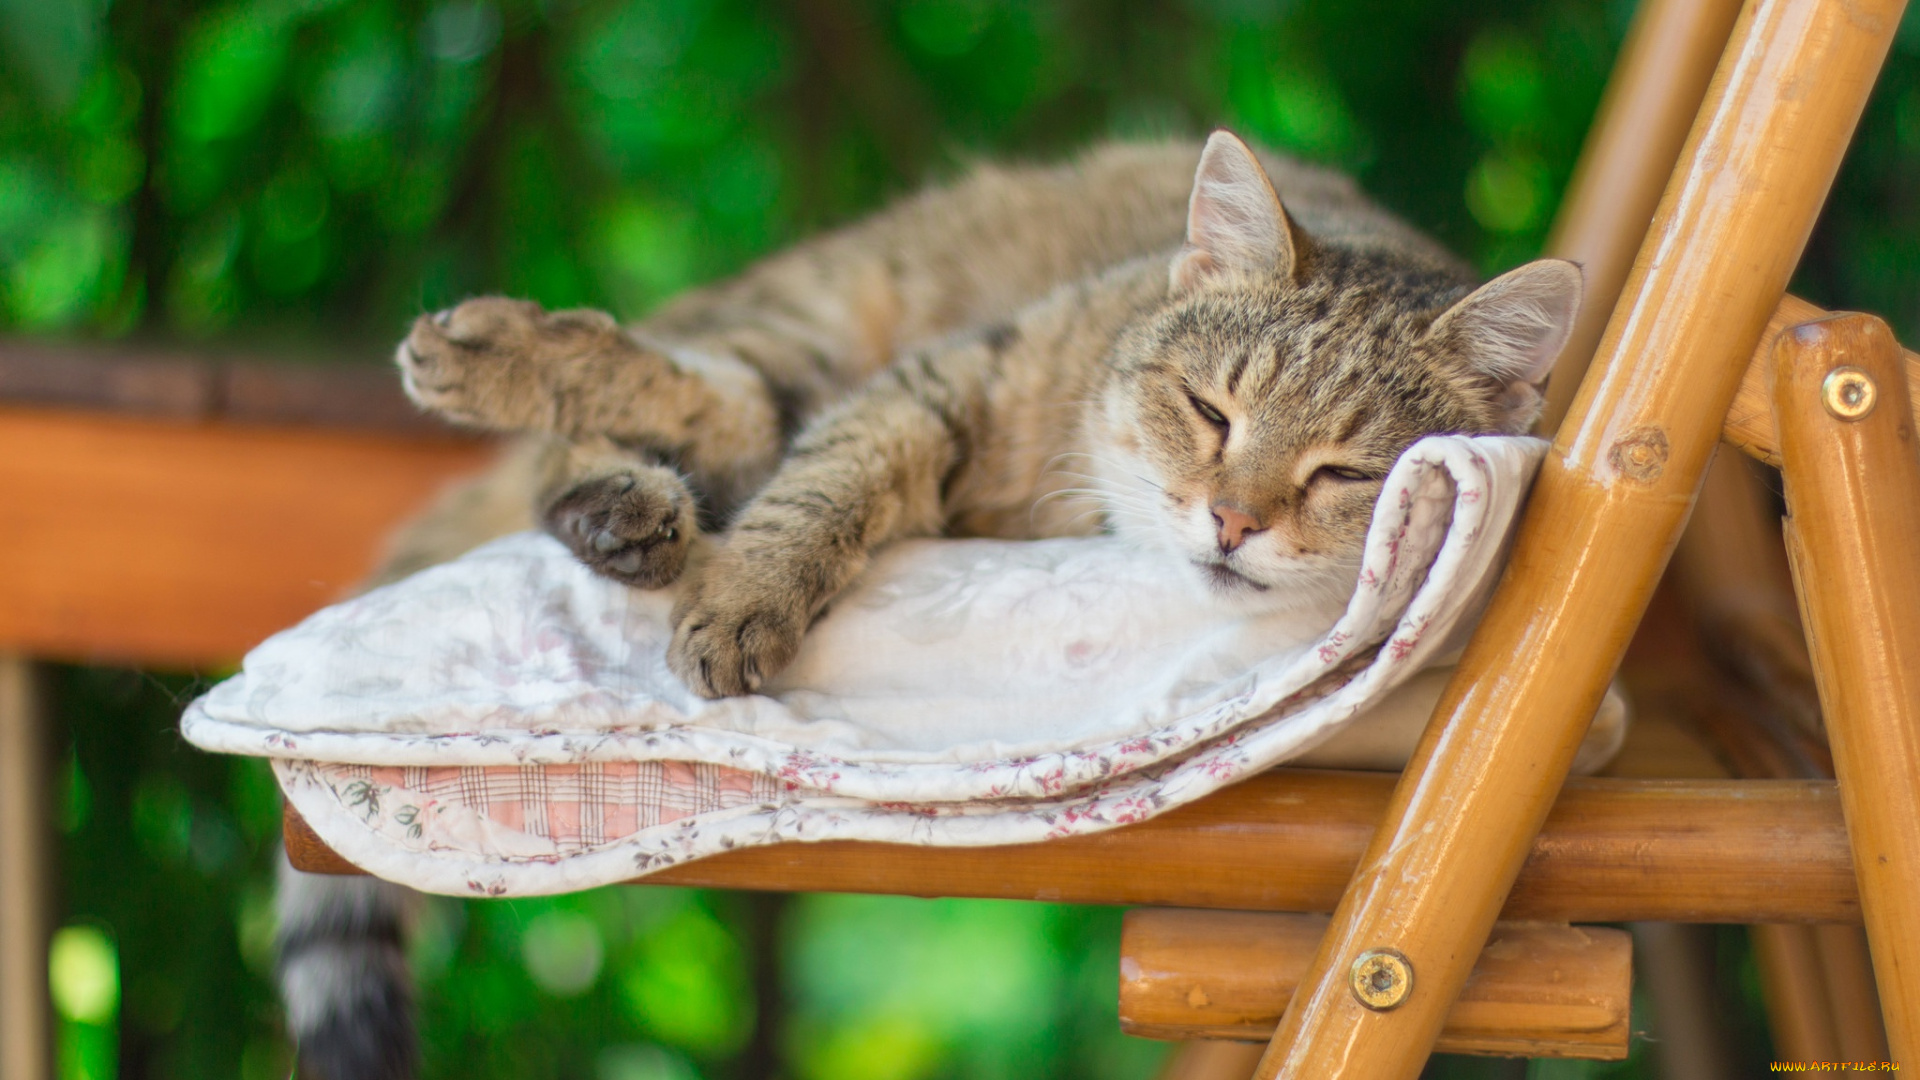 животные, коты, кот, стул, лето, одеяло, спит, настроение, боке, размыто, полосатый, леджит, лень, фон, серый, зеленый, кошка